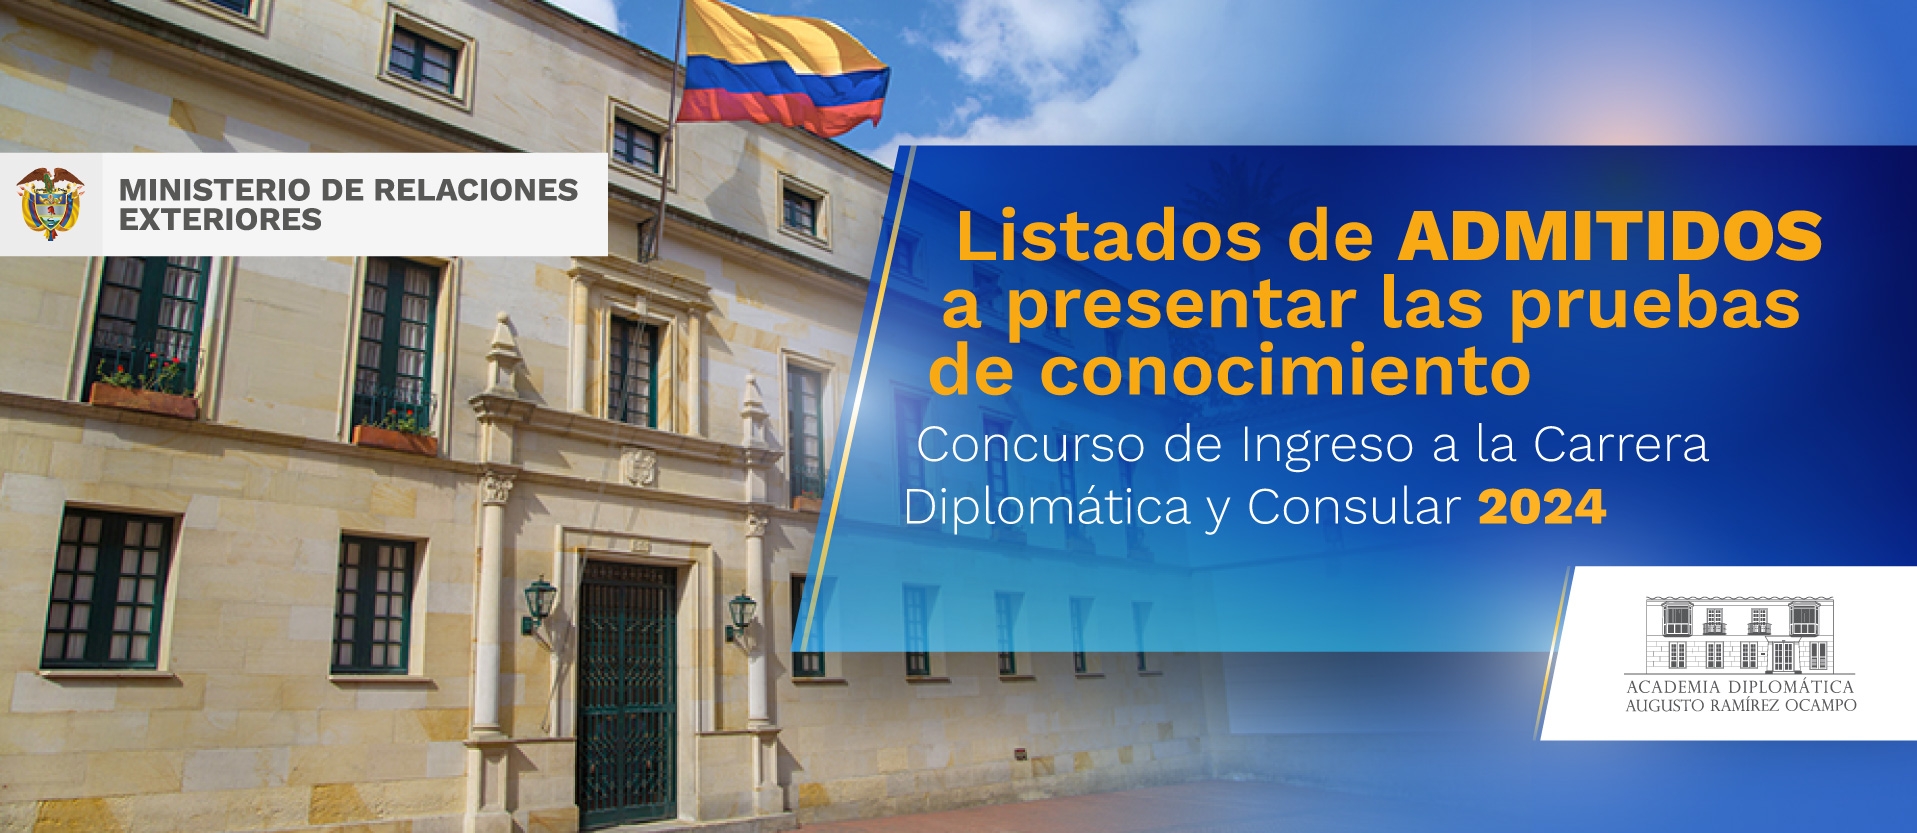 Listado de admitidos a presentar pruebas escritas del Concurso Ingreso a la Carrera Diplomática y Consular 2024